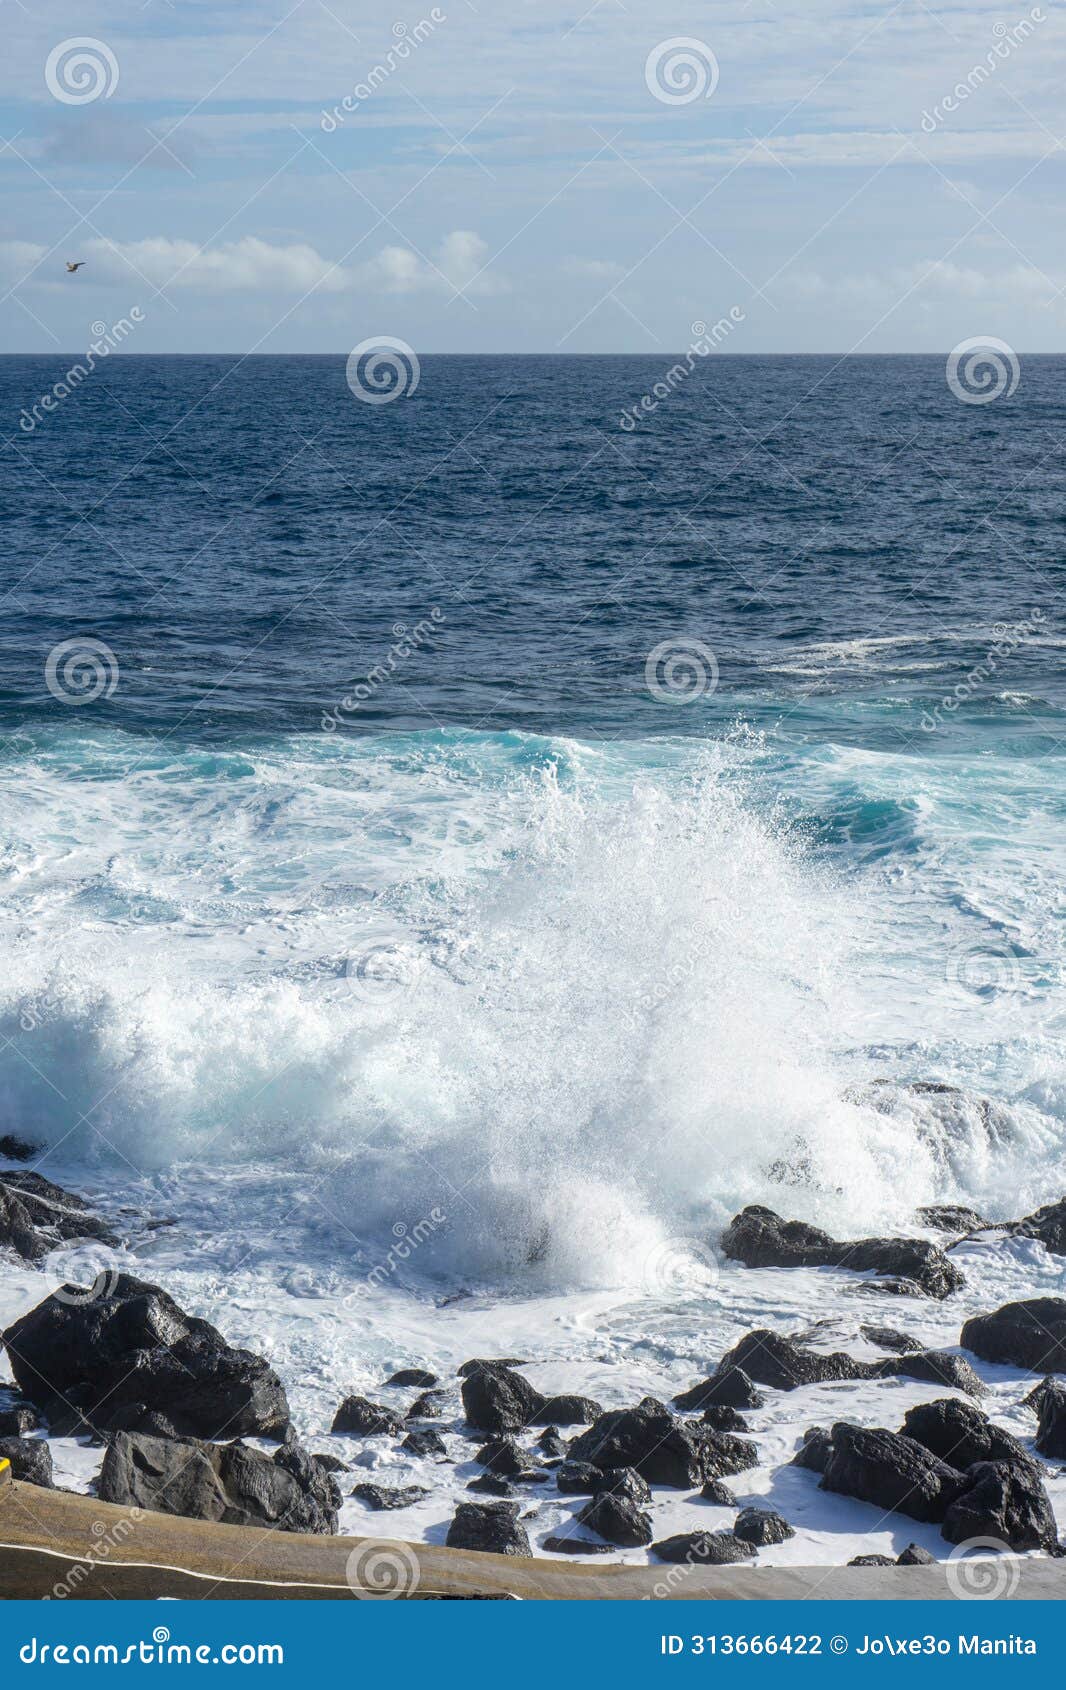 powerful waves crash along the shoreline of cinco ribeiras.